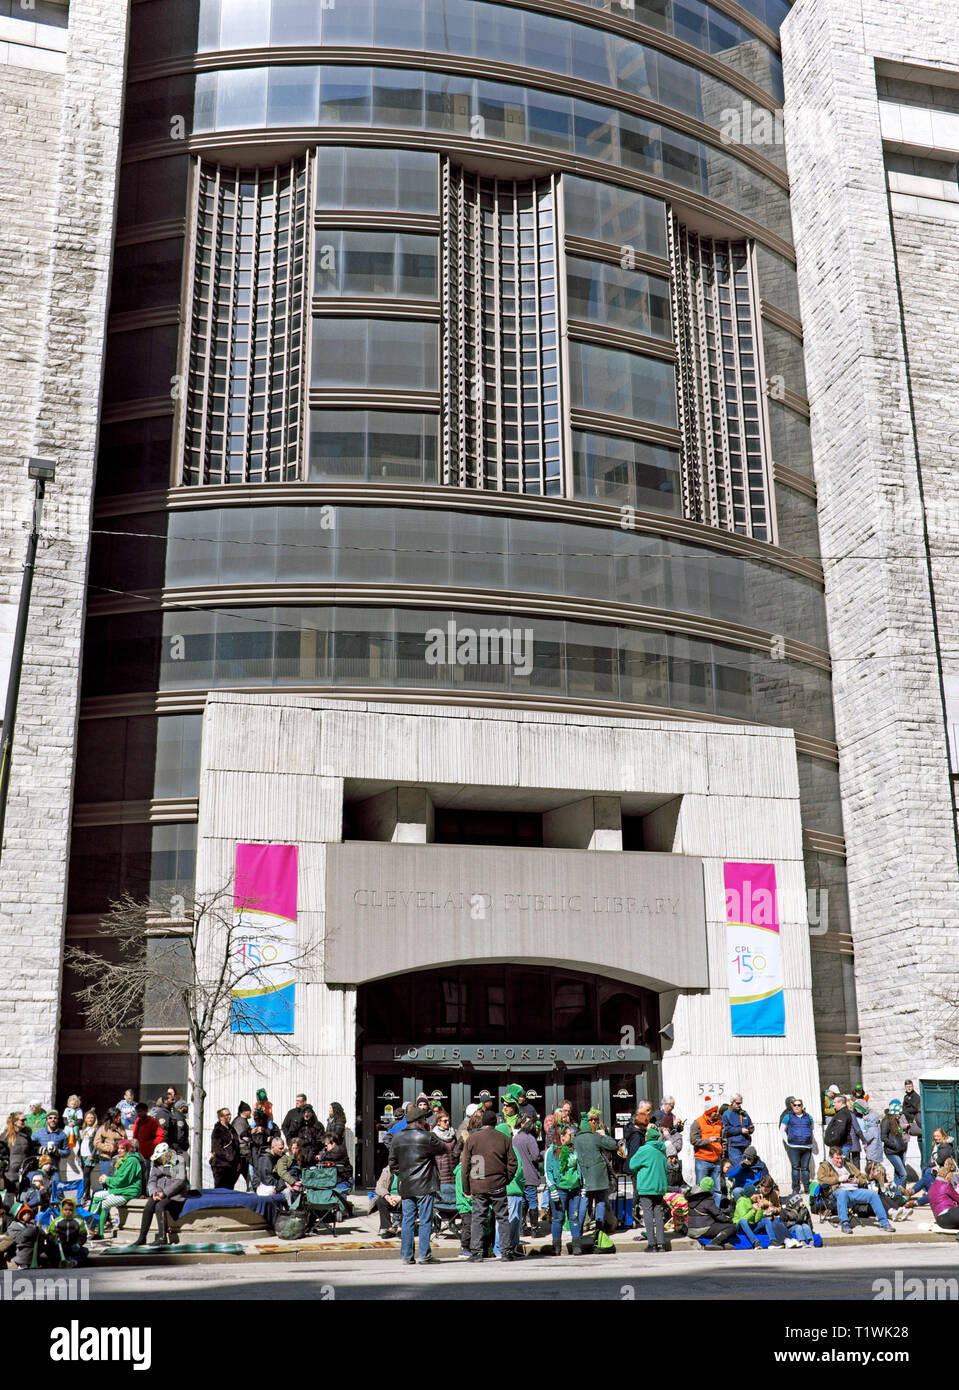 Las multitudes se reúnen frente a la Biblioteca Pública de Cleveland en Euclid Avenue en el centro de Cleveland, Ohio, para el desfile del día de San Patricks en 2019. Foto de stock